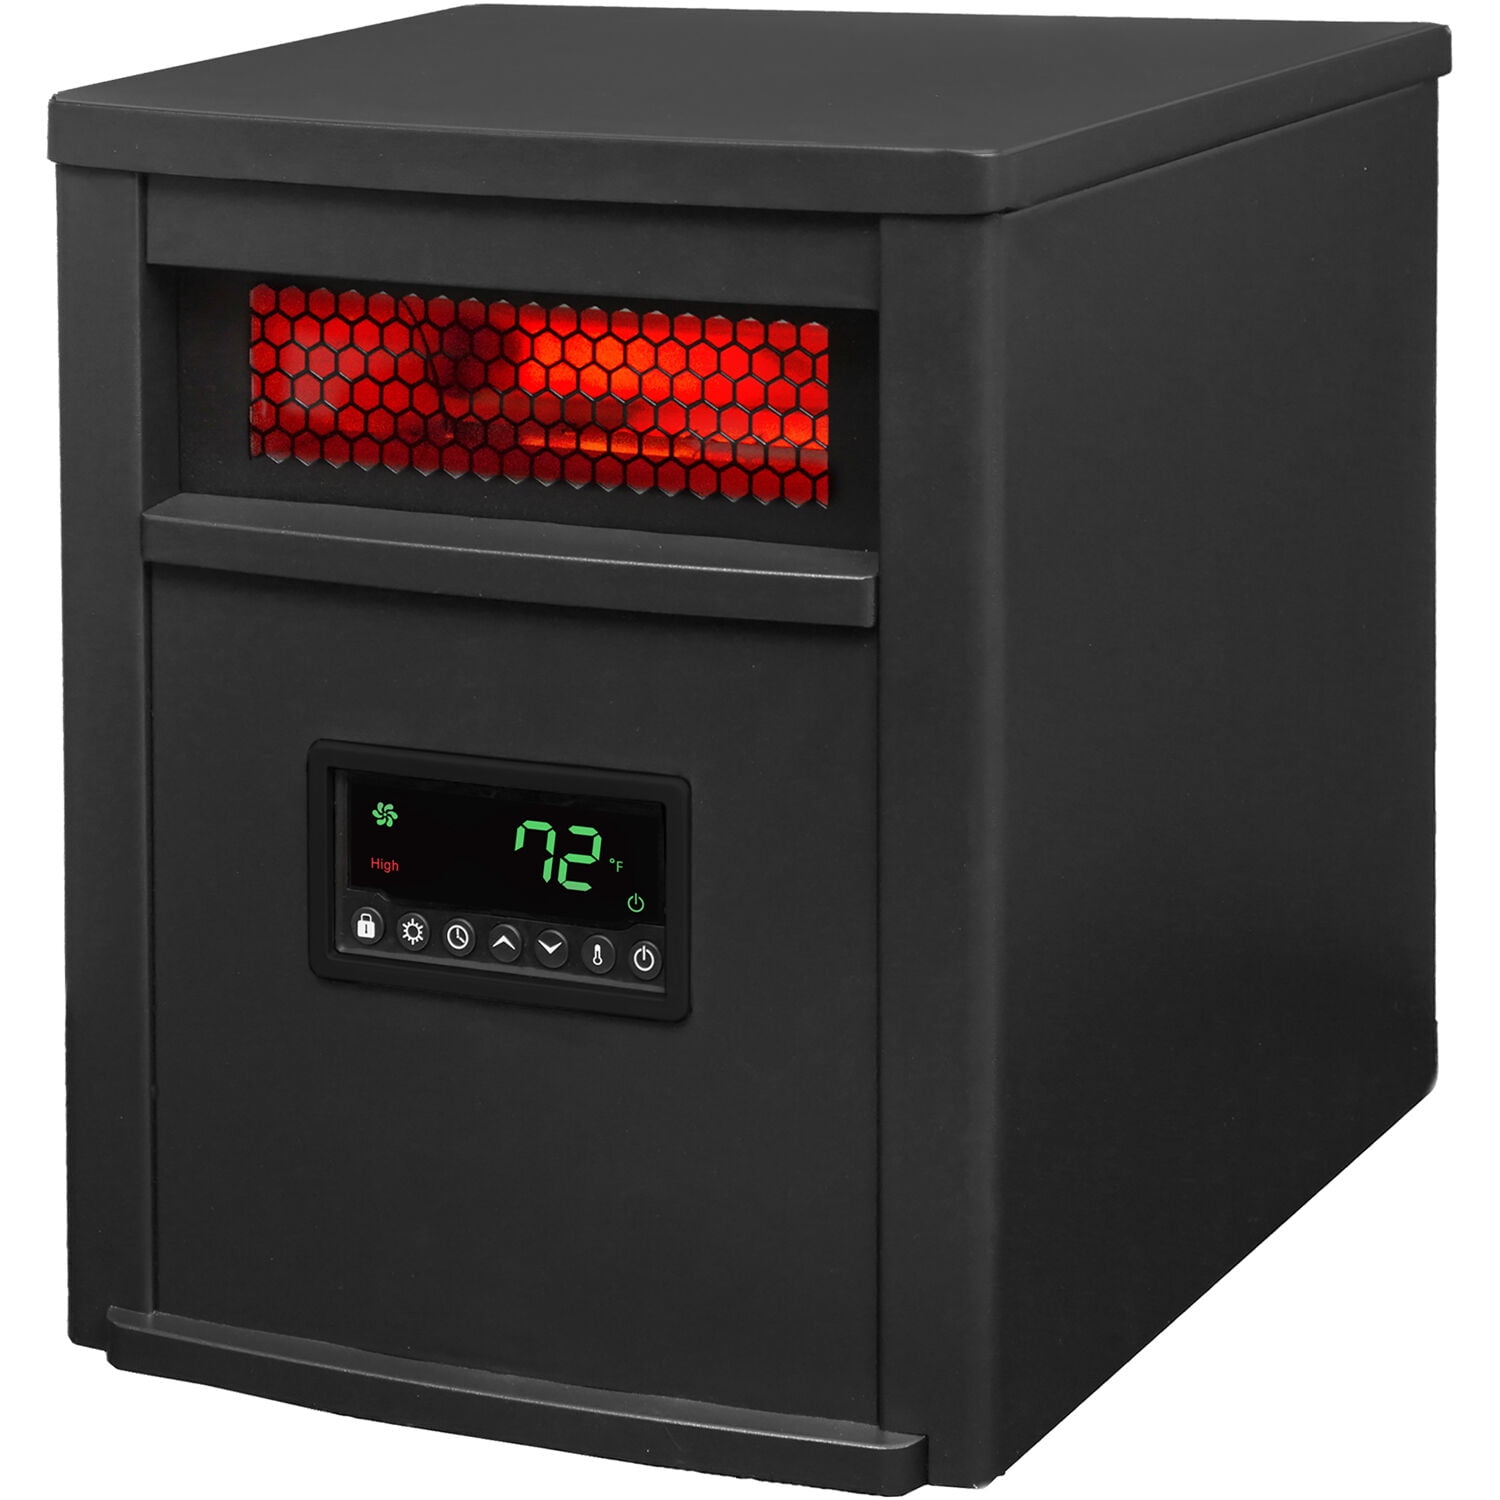 1500w infrared heater